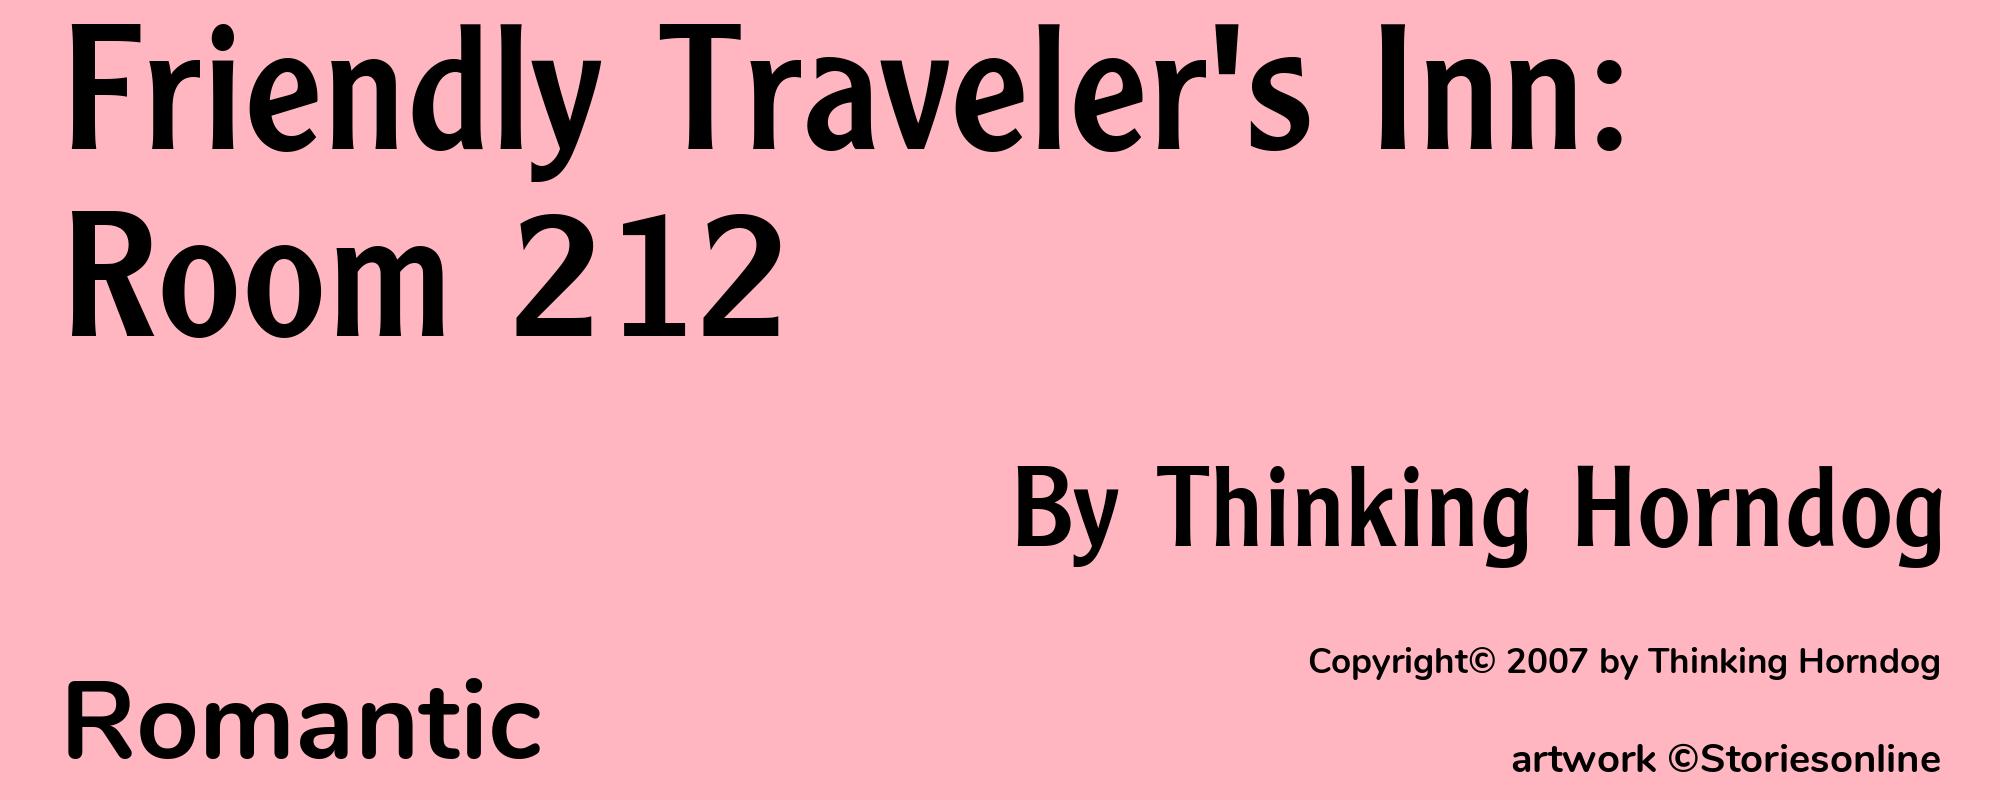 Friendly Traveler's Inn: Room 212 - Cover